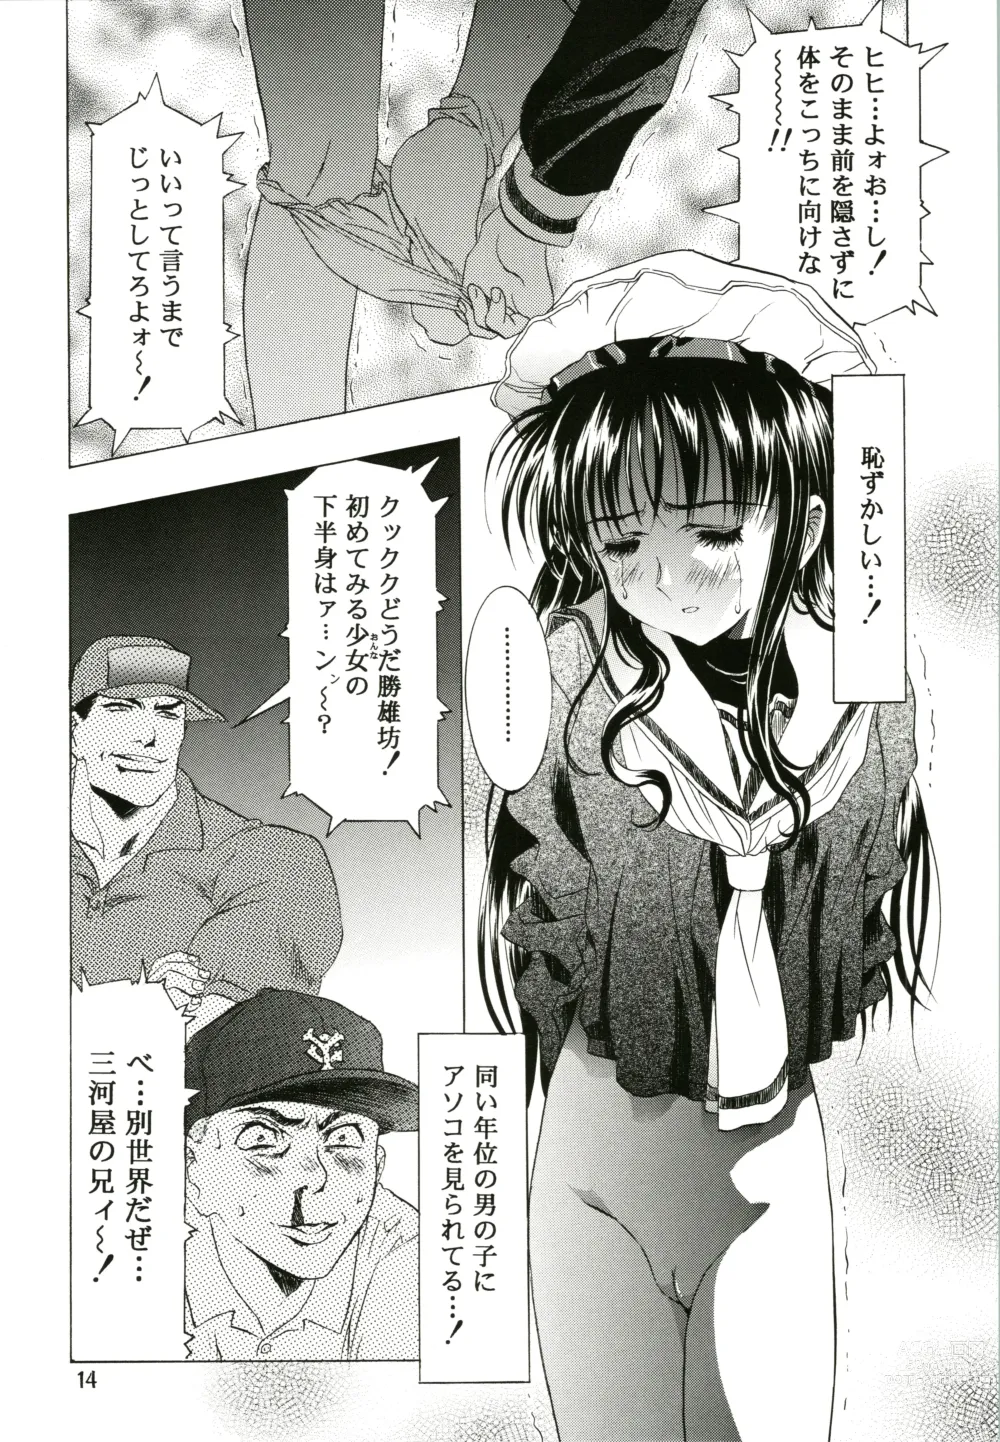 Page 14 of doujinshi Sakura Ame